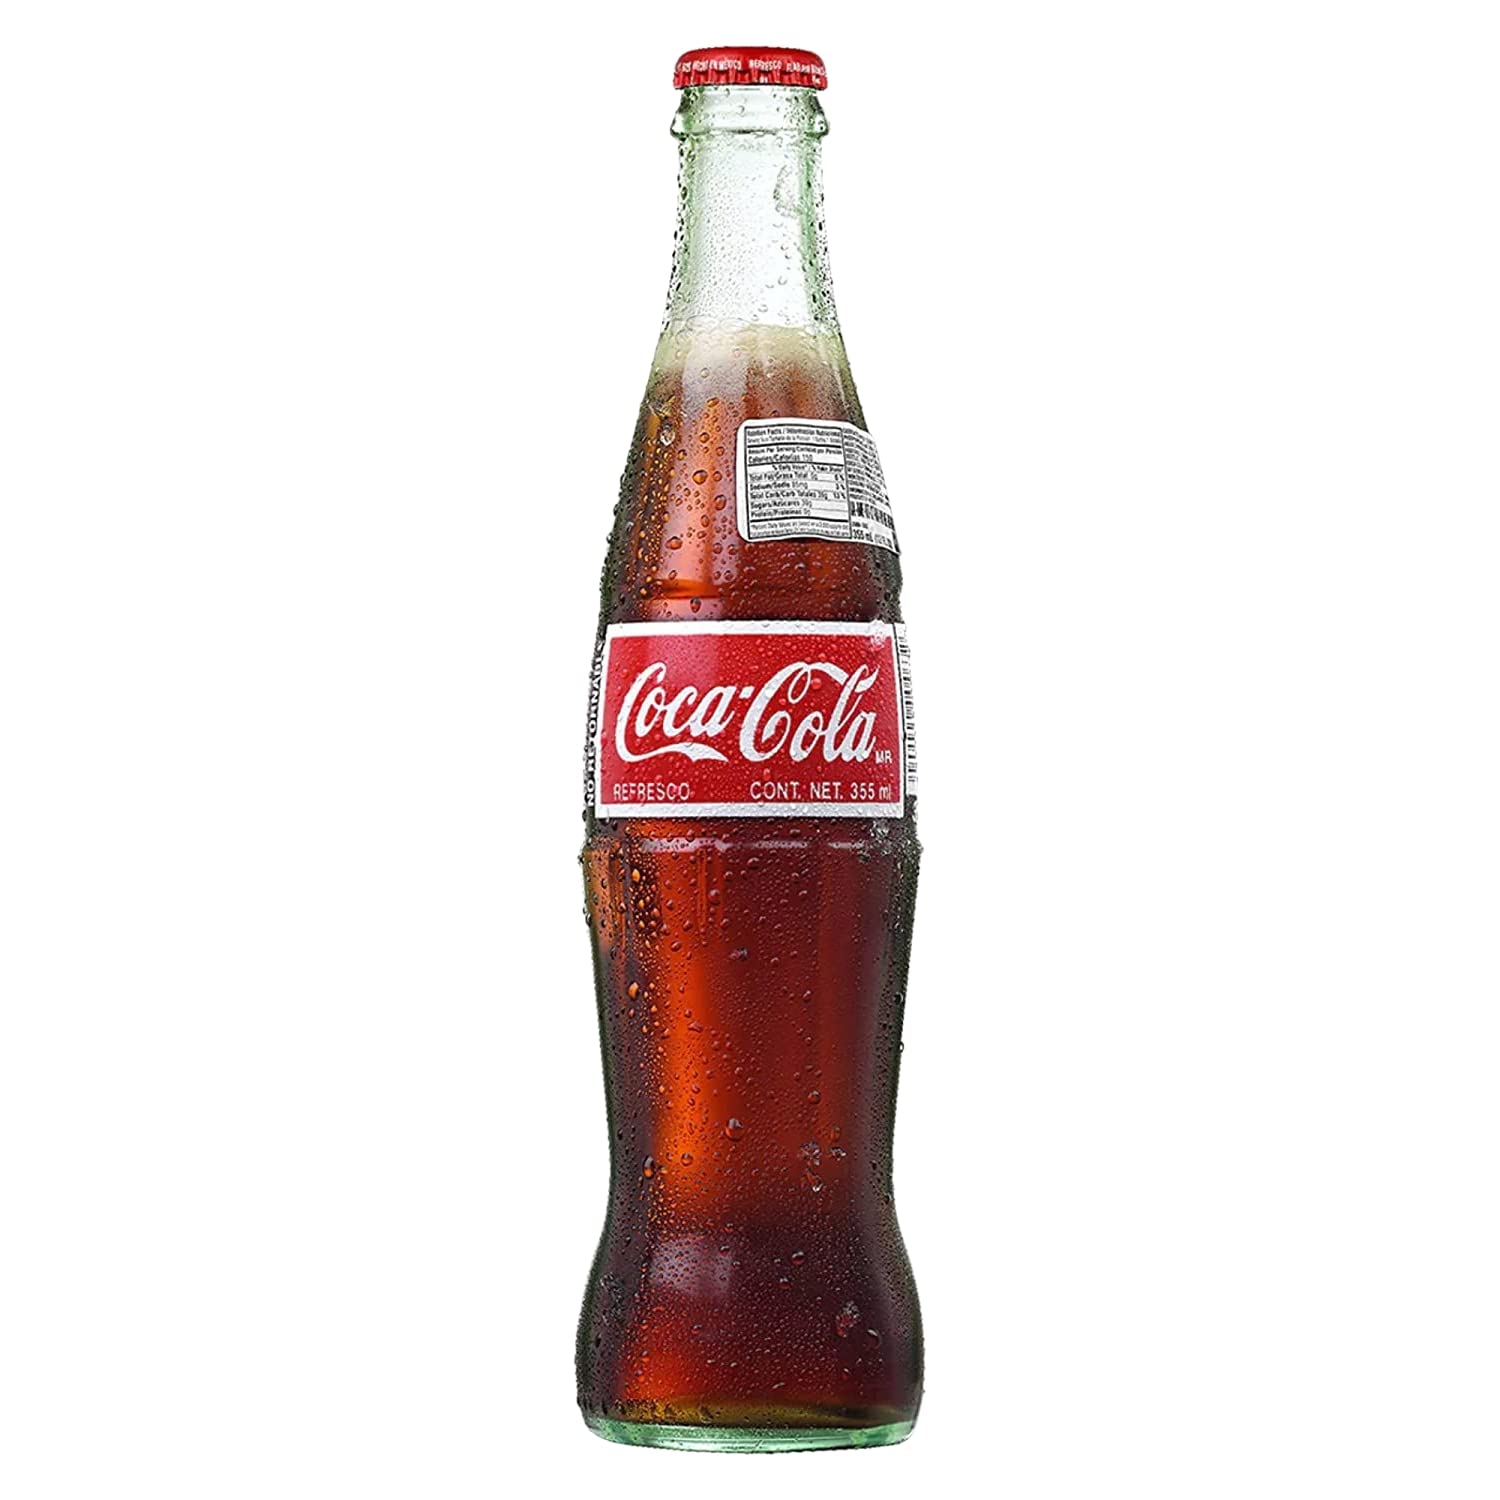 Coke Coca-cola Glass 1 Liter Bottles PFAND-WERT-FLASCHE Schutzmark Germany  